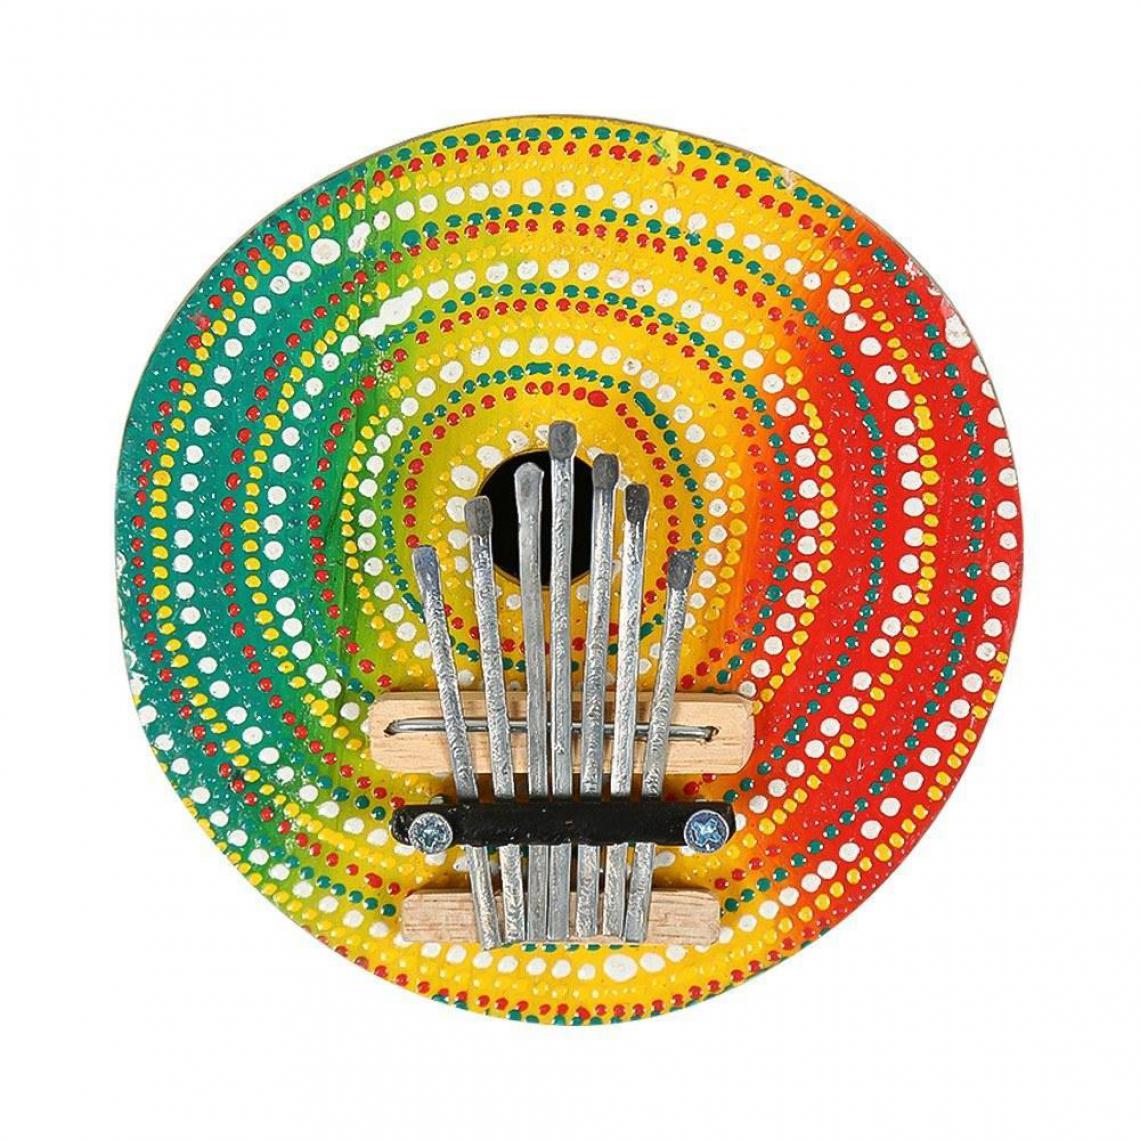 Justgreenbox - Piano à pouce coloré à 7 touches Kalimba Mbira Finger - 1005001495995117 - Accessoires claviers